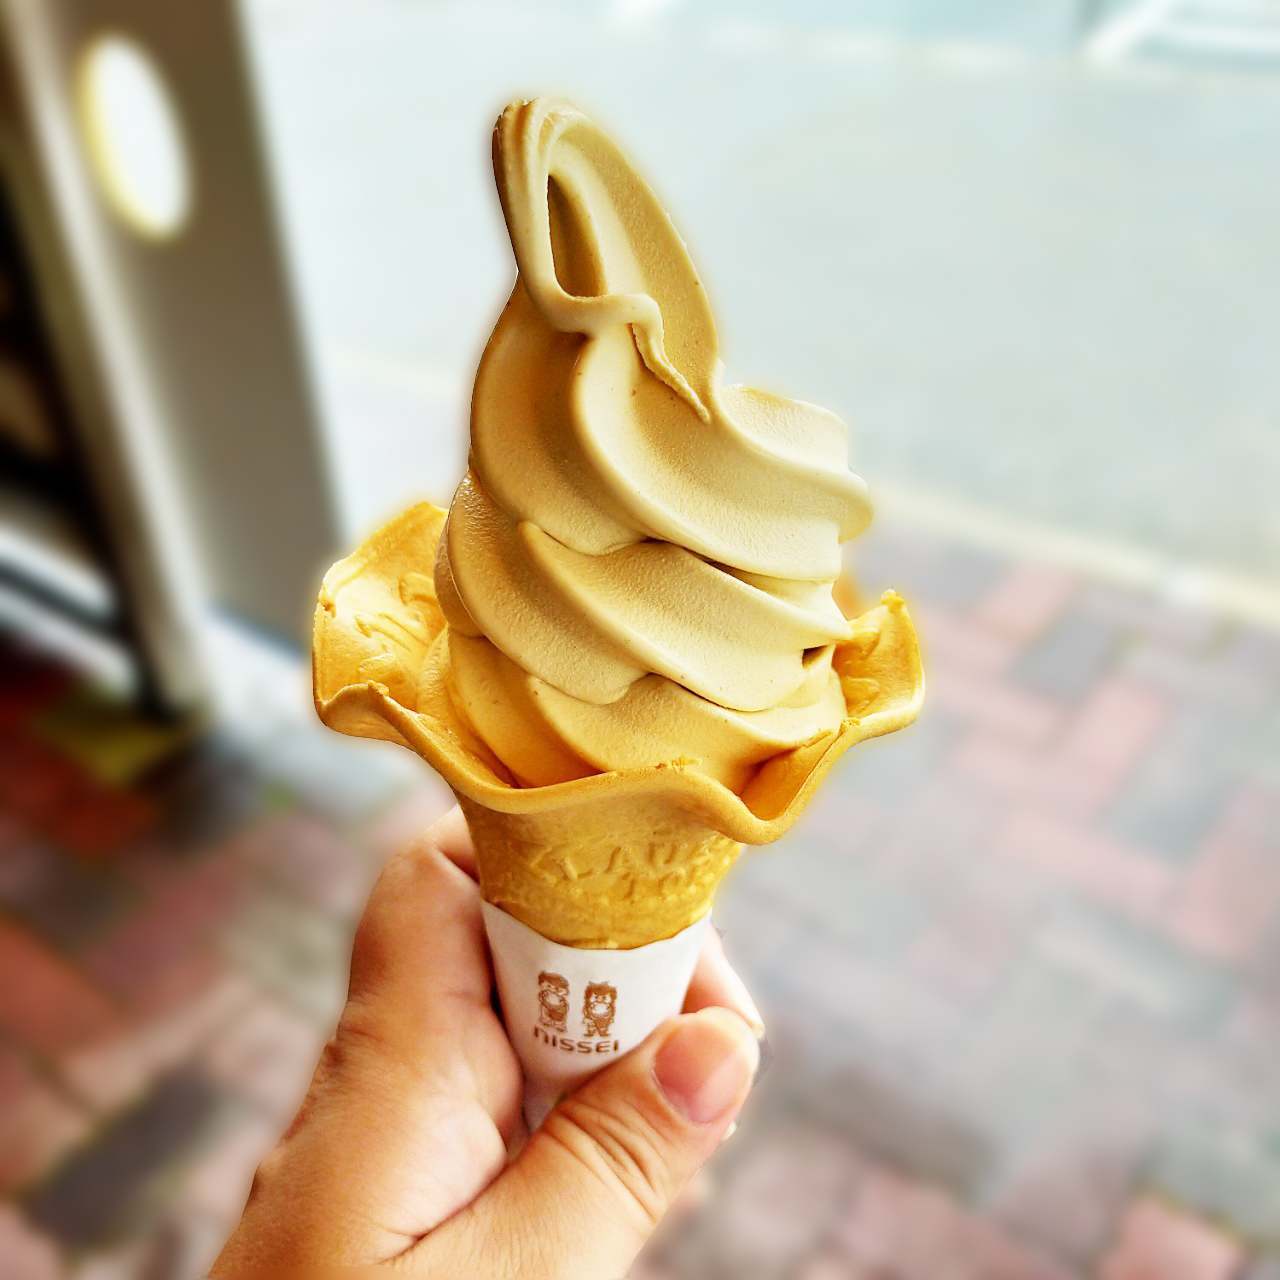 木村ピーナッツ 冷たく濃厚なピーナッツソフトクリームに幸せの笑みが止まらな い 館山市下真倉 Trieat